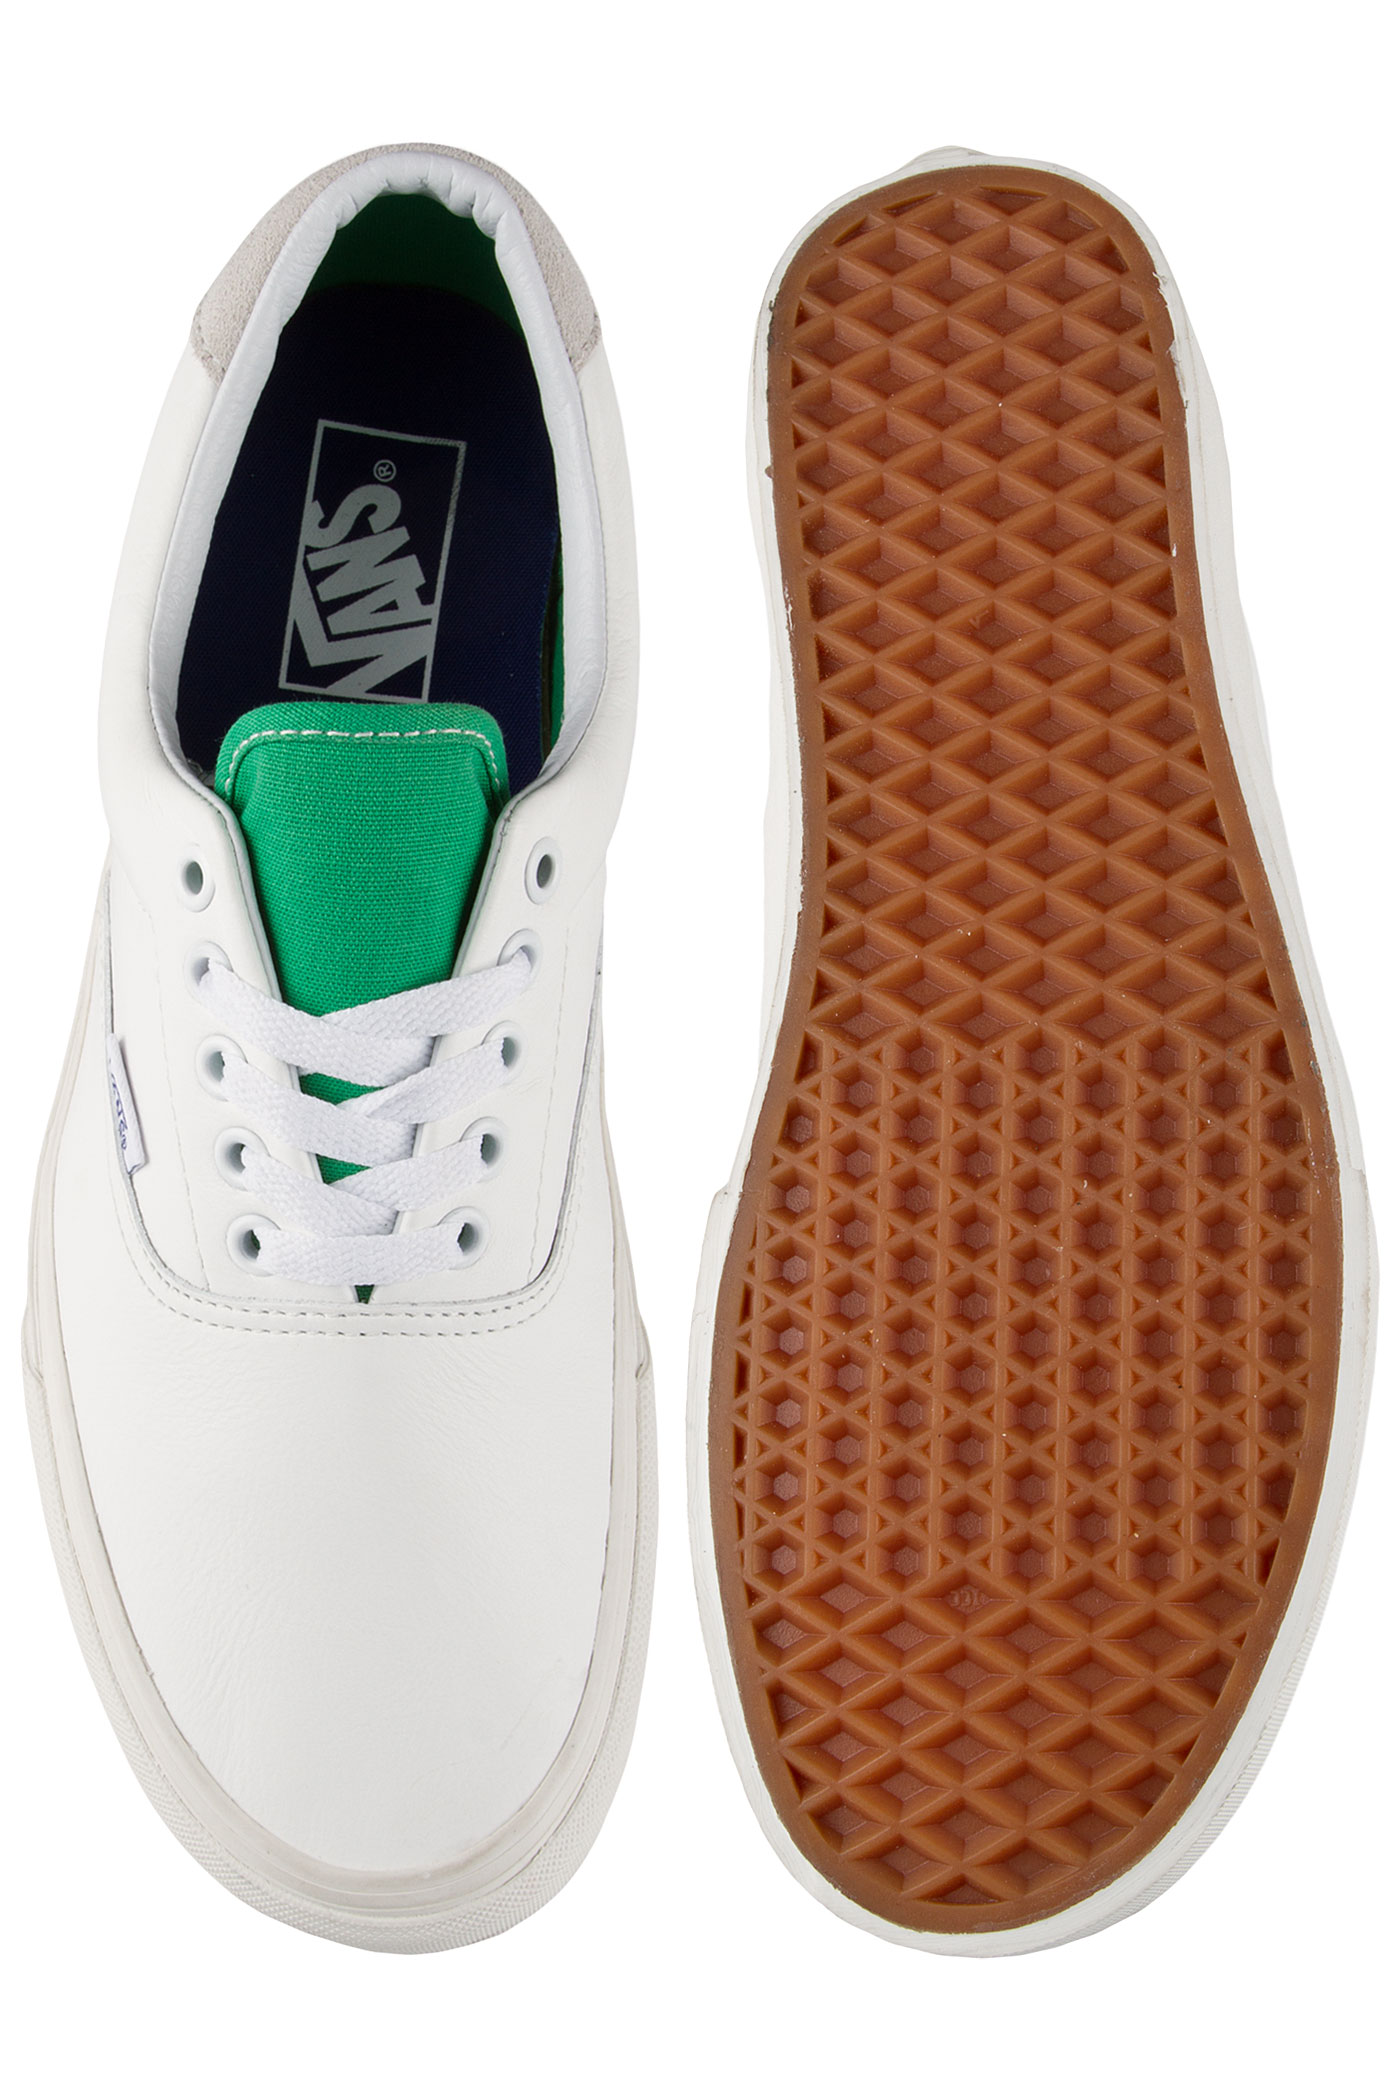 Vans Era 59 Shoe (true white kelly green) buy at skatedeluxe